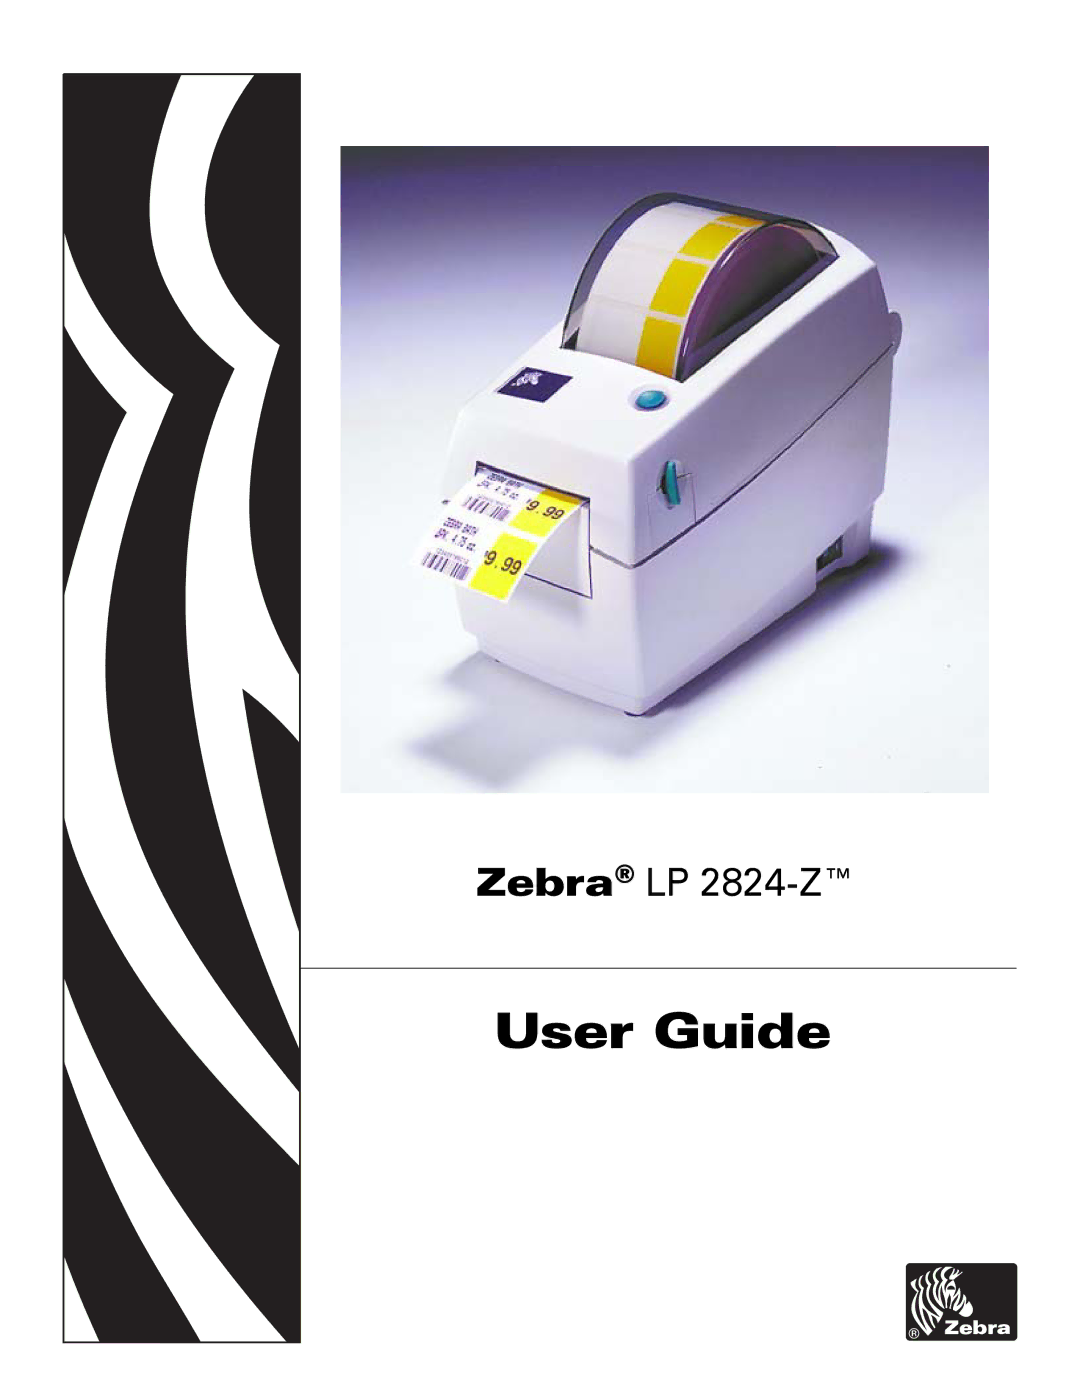 Zebra Technologies H 2824-Z user manual User Guide 